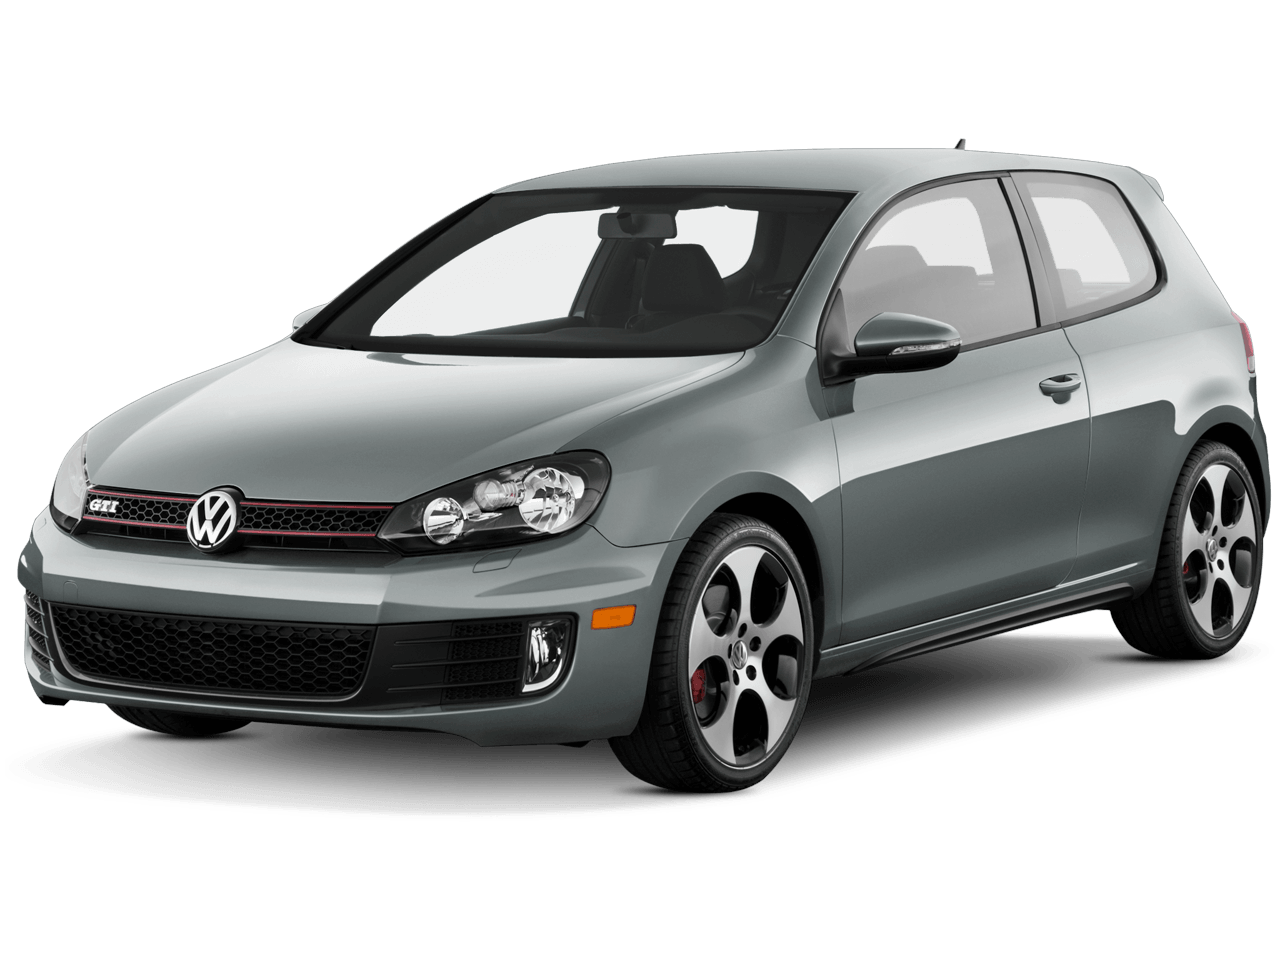 Volkswagen Png Car Image PNG Image